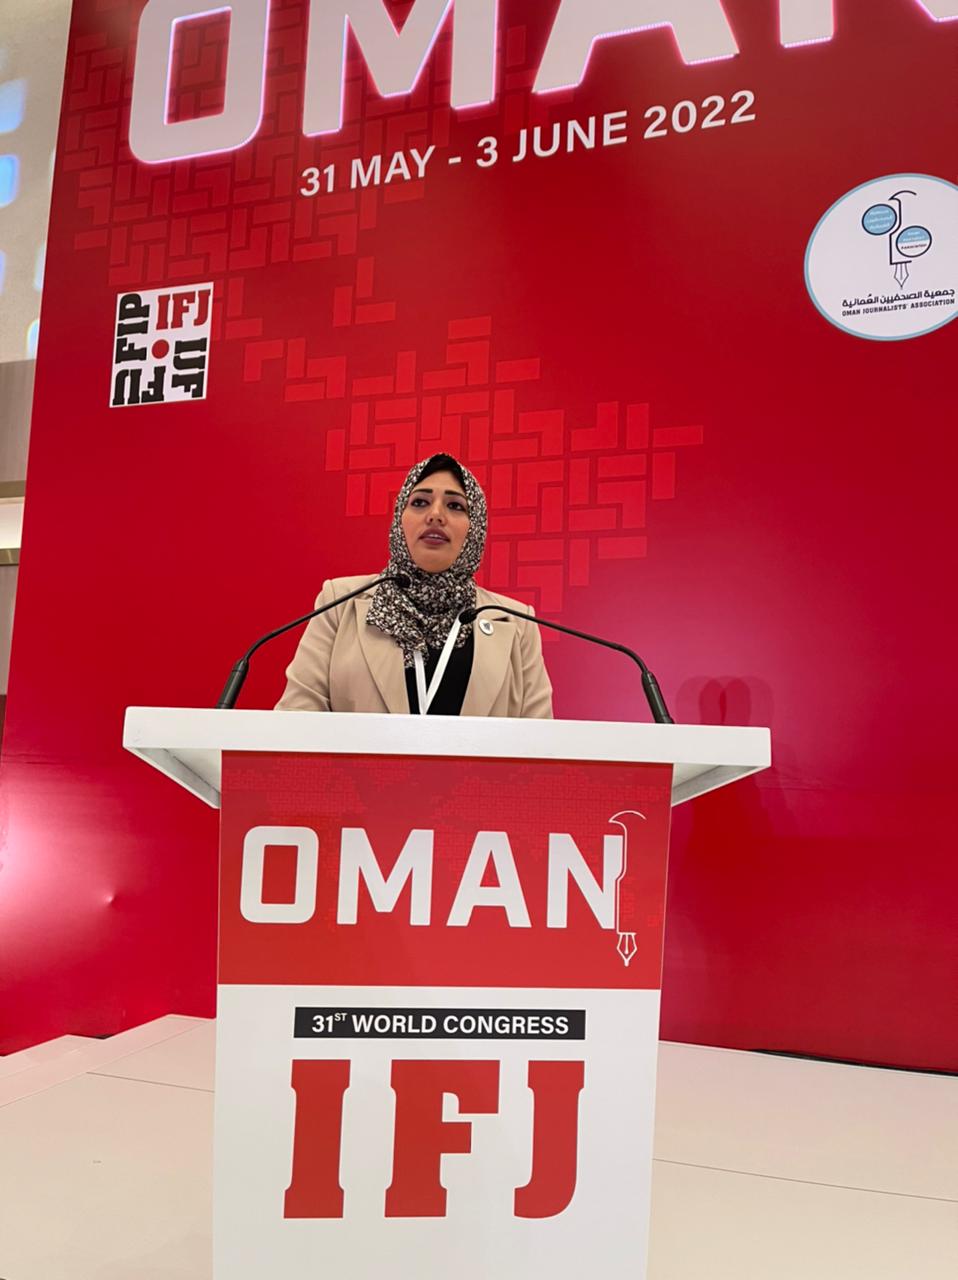 الصحفية أمل طومان تفوز بعضوية لجنة النوع الاجتماعي بالاتحاد الدولي للصحفيين